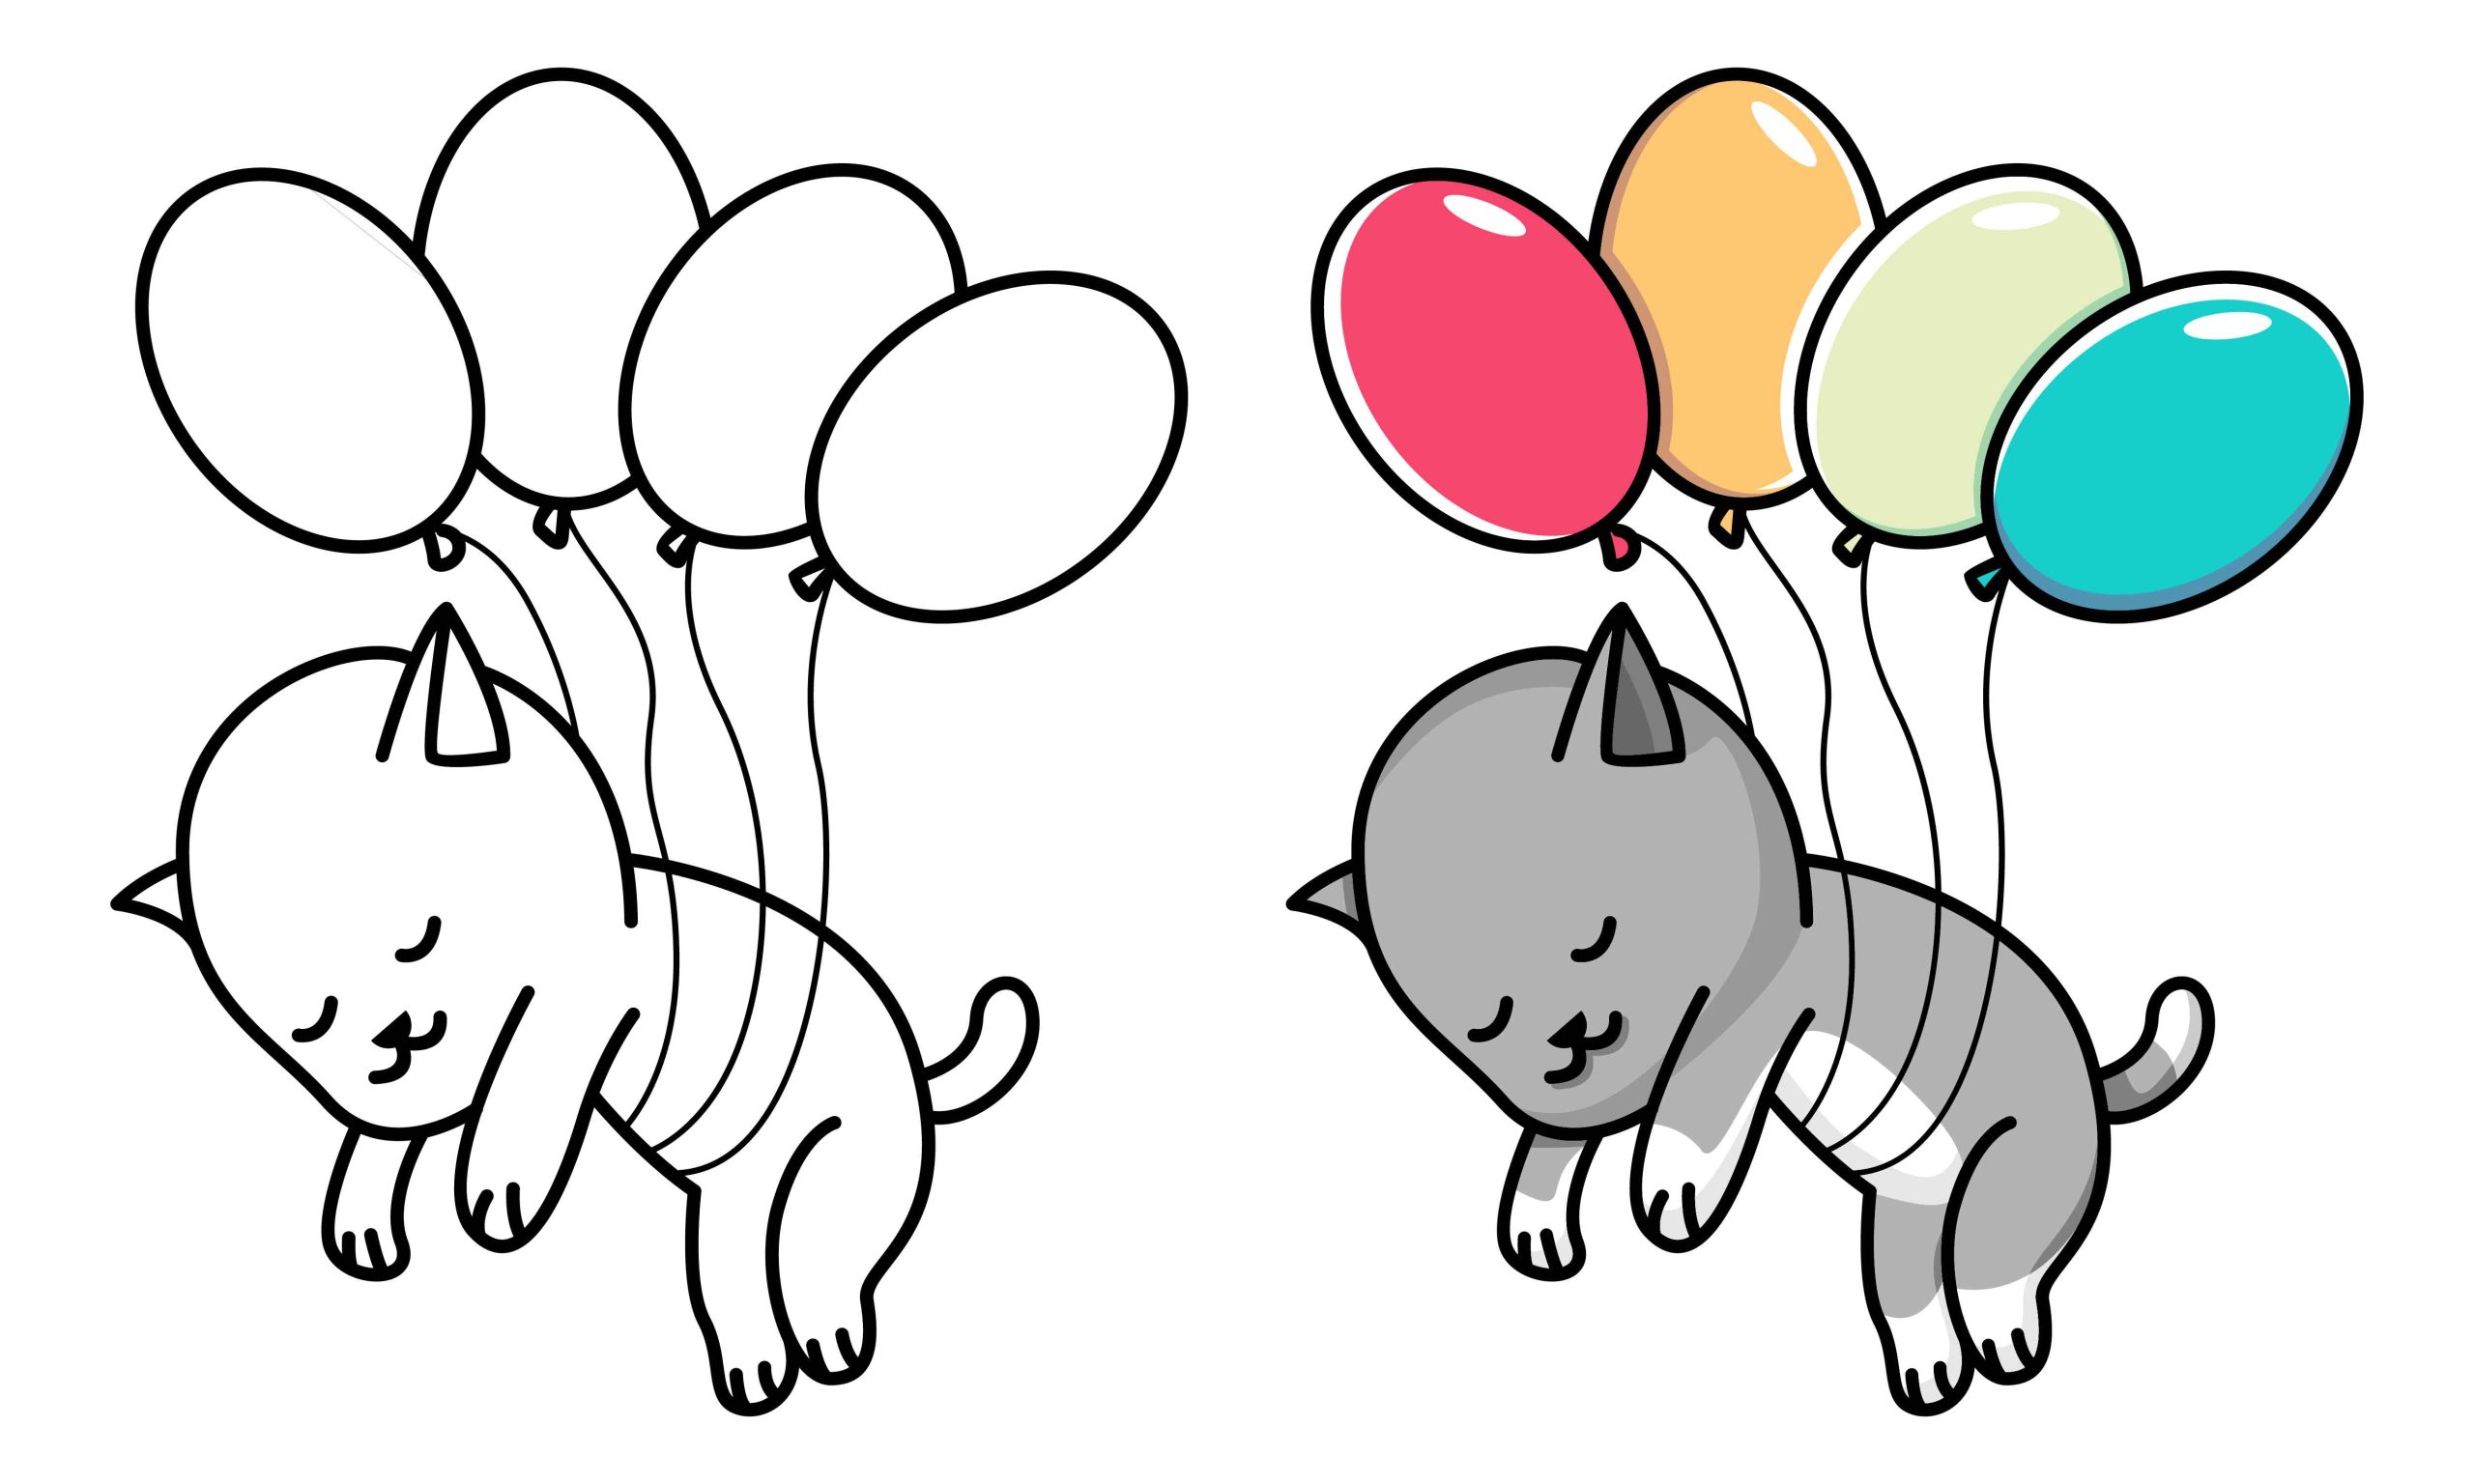 Gato voando com balões